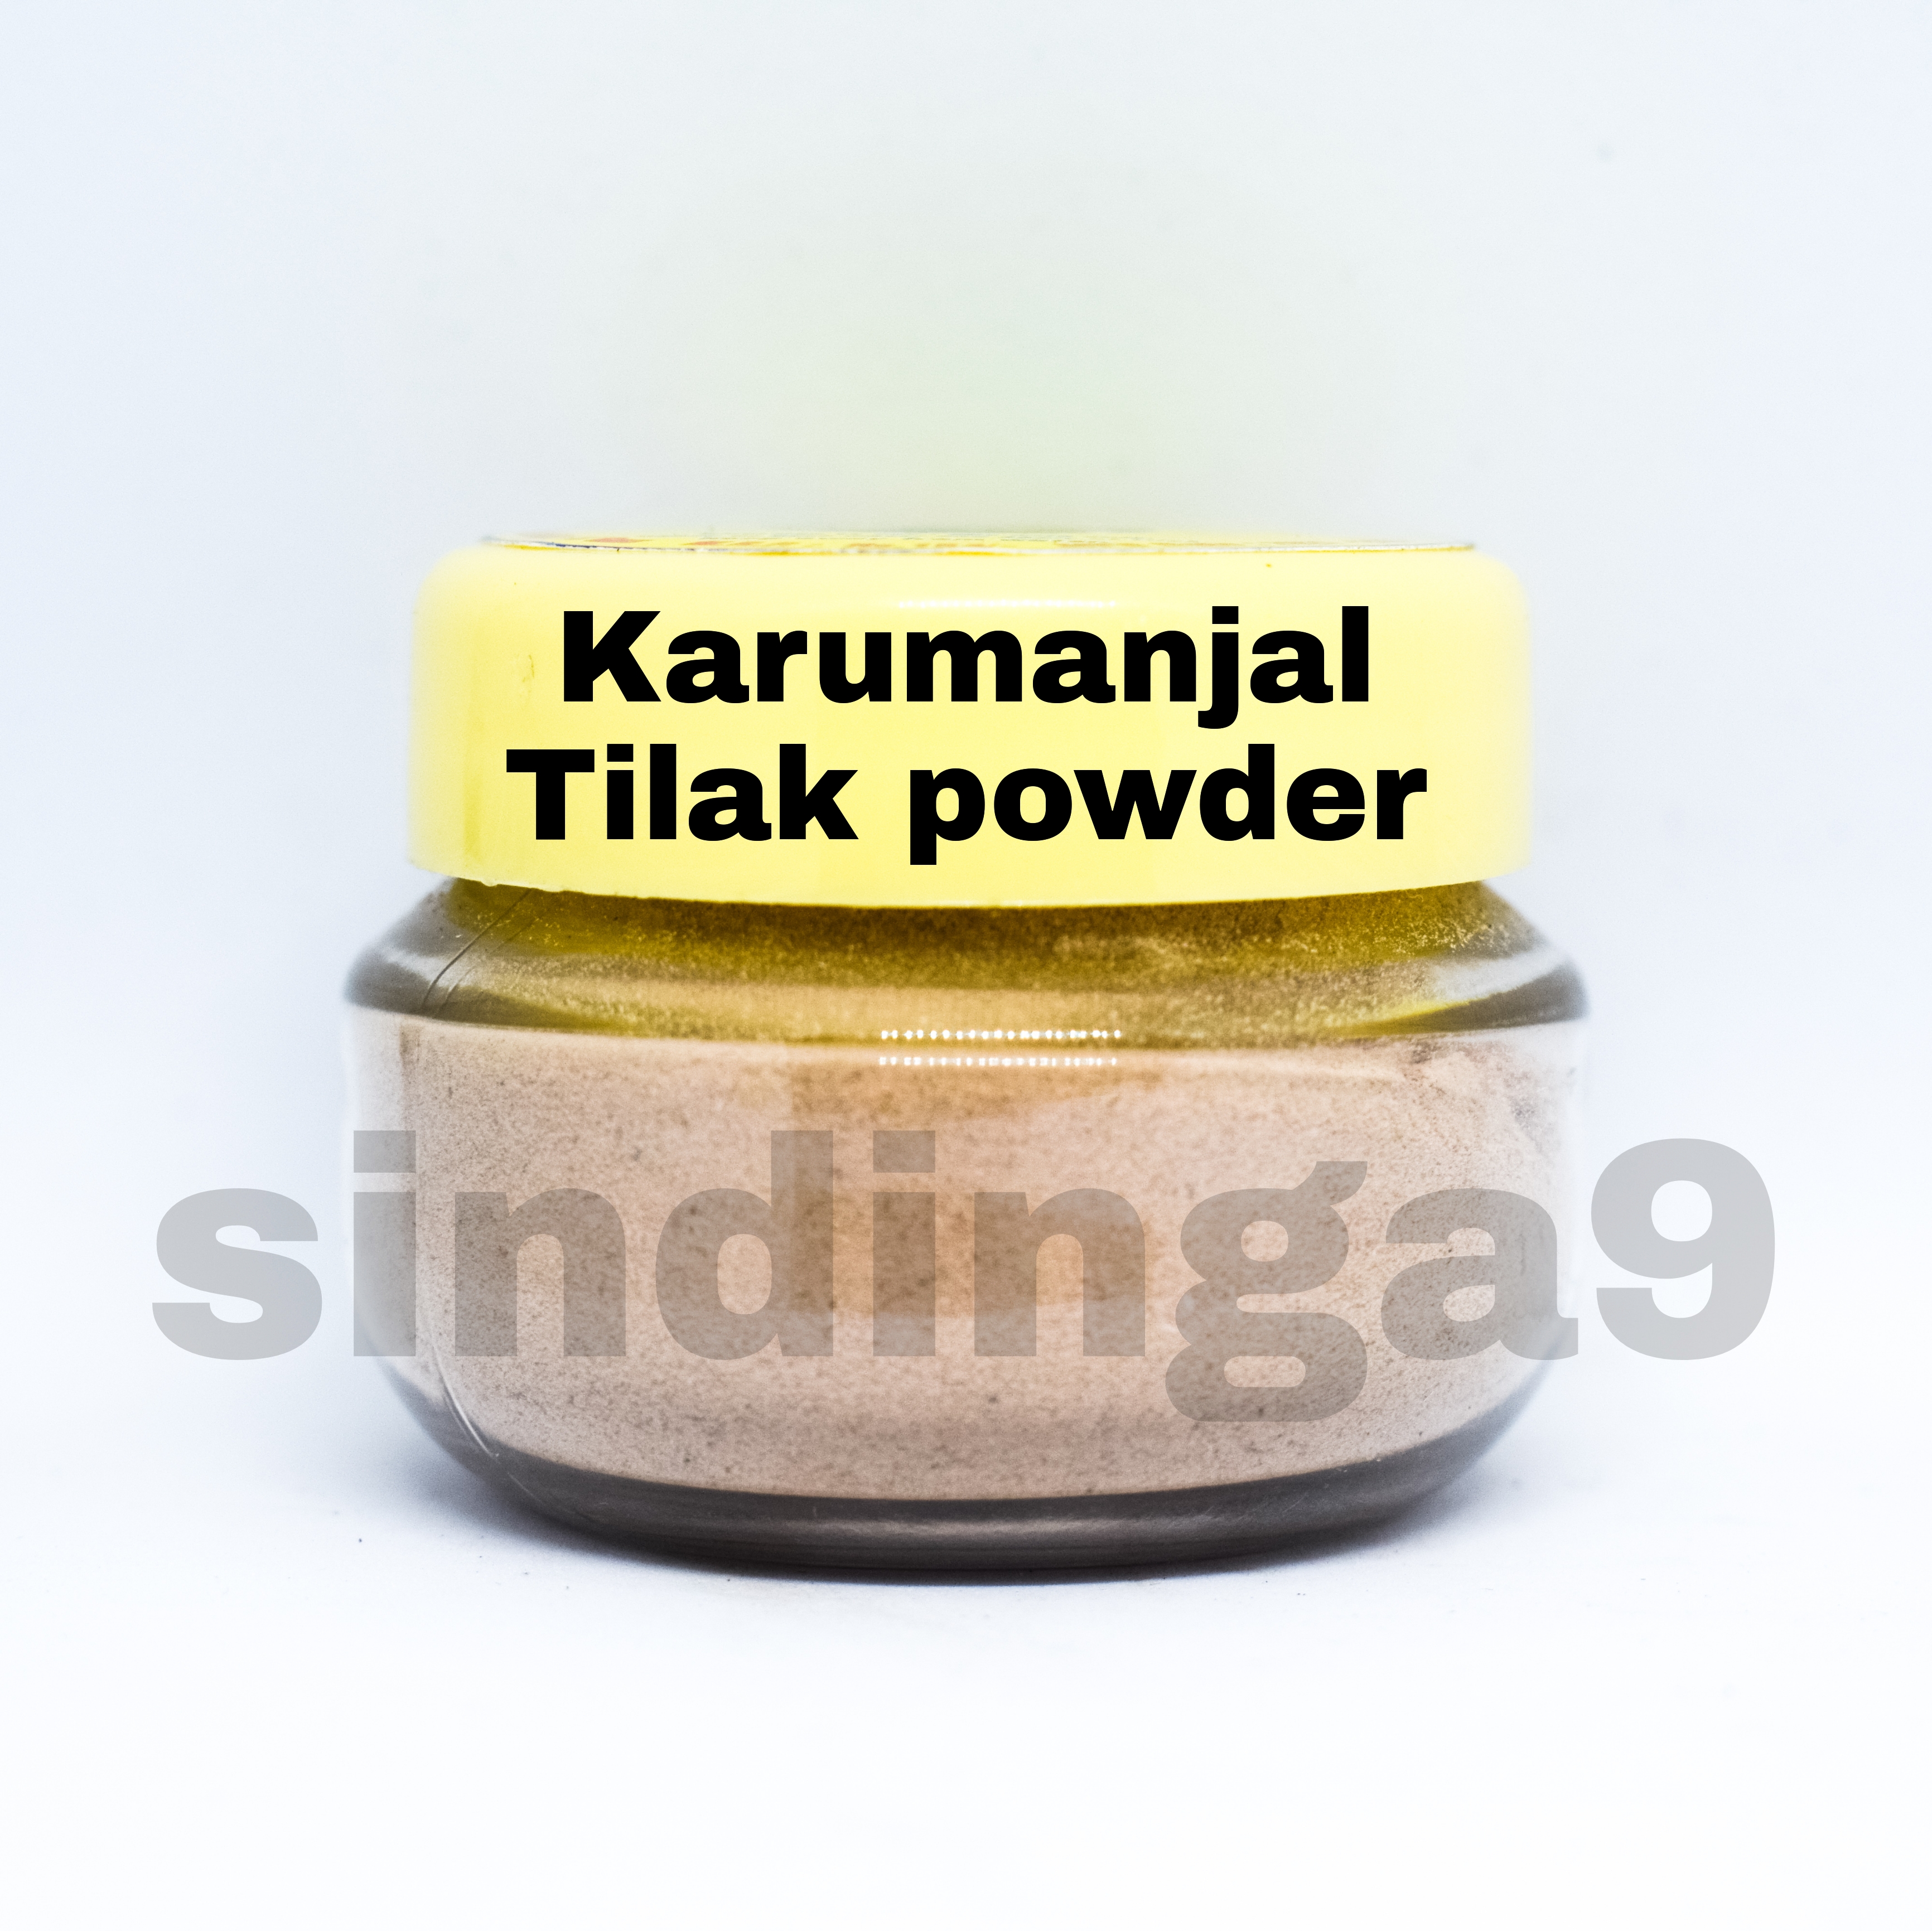 Karumanjal Tilak powder